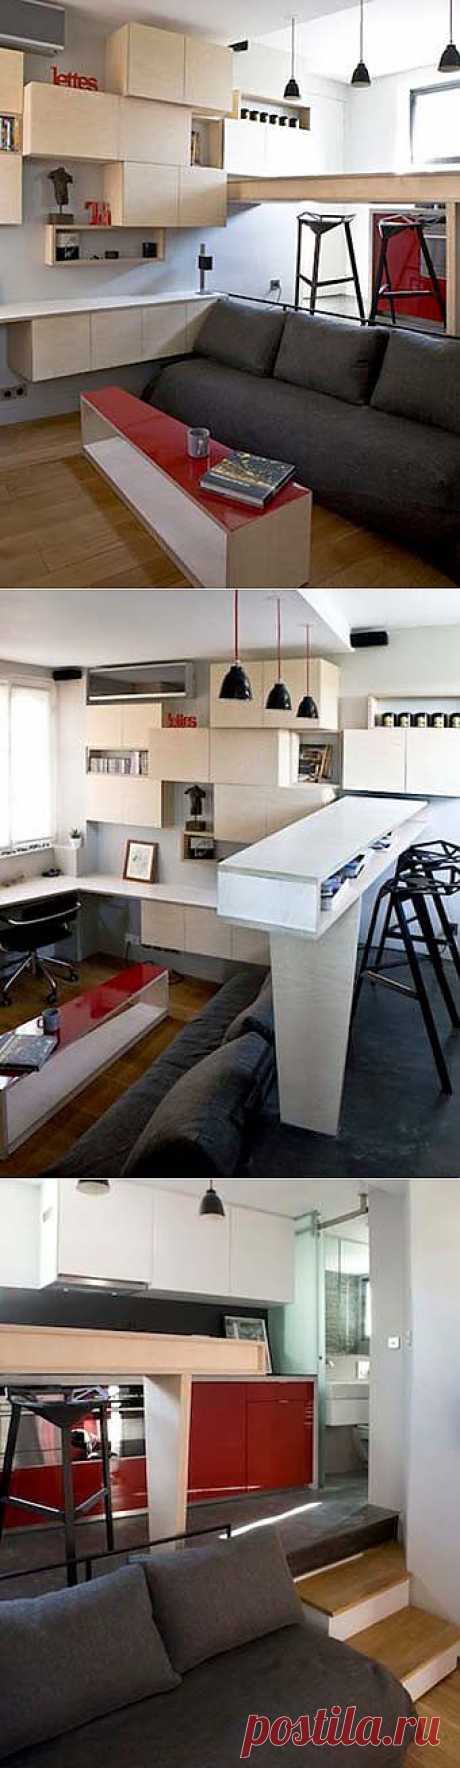 Маленькая квартира в Париже 12 кв. м: пример удачной планировки